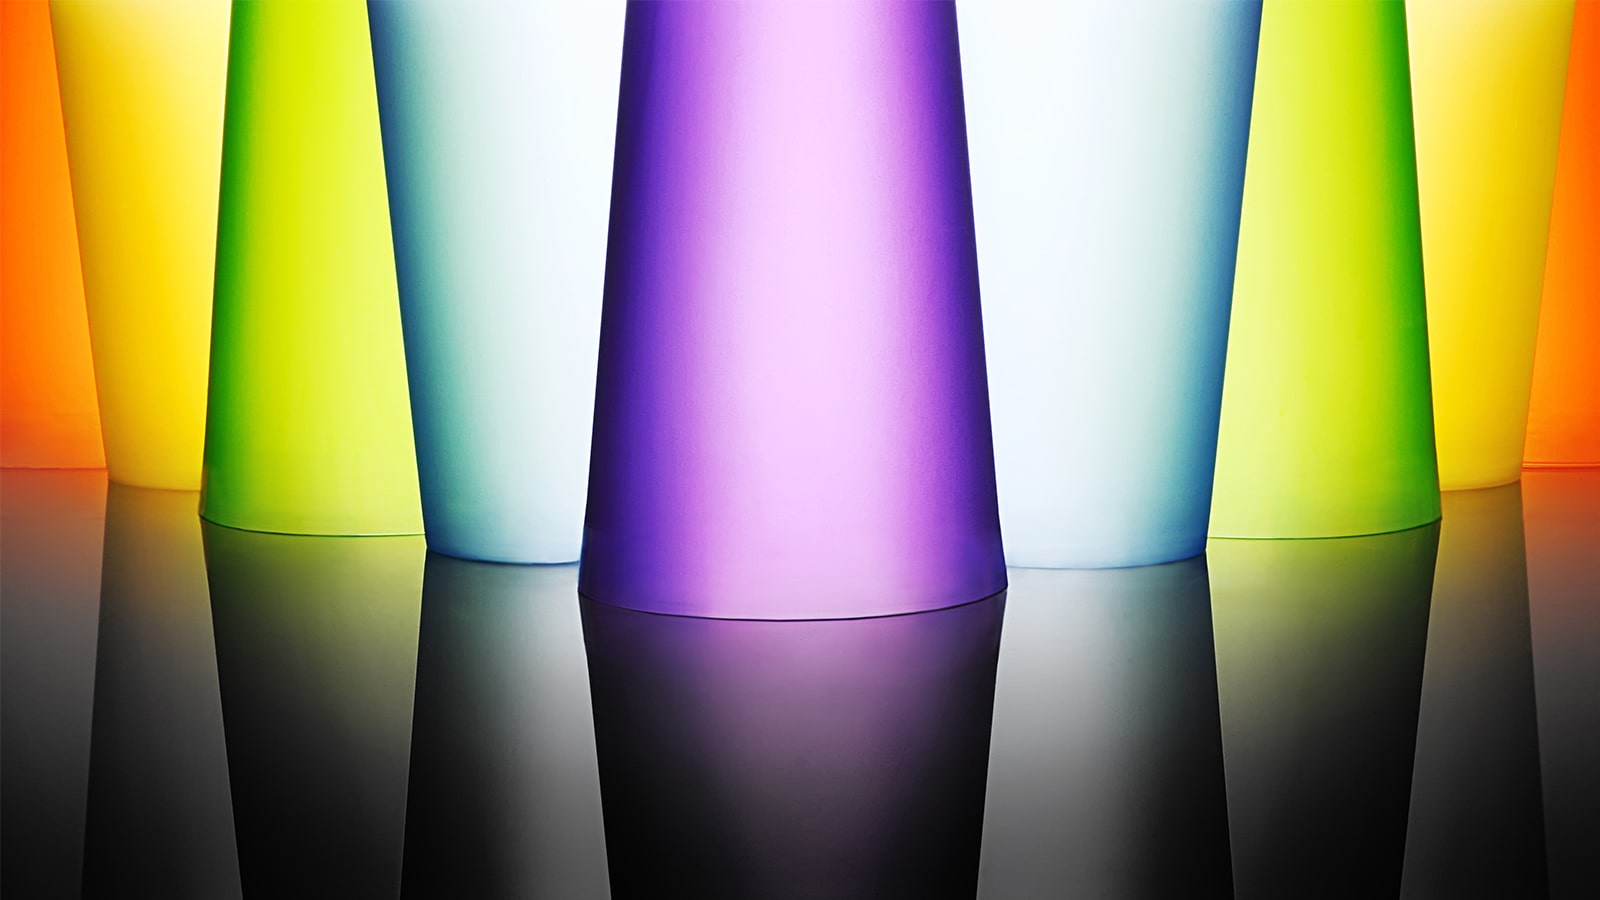 Et bilde av lyse og fargerike glassbeger.